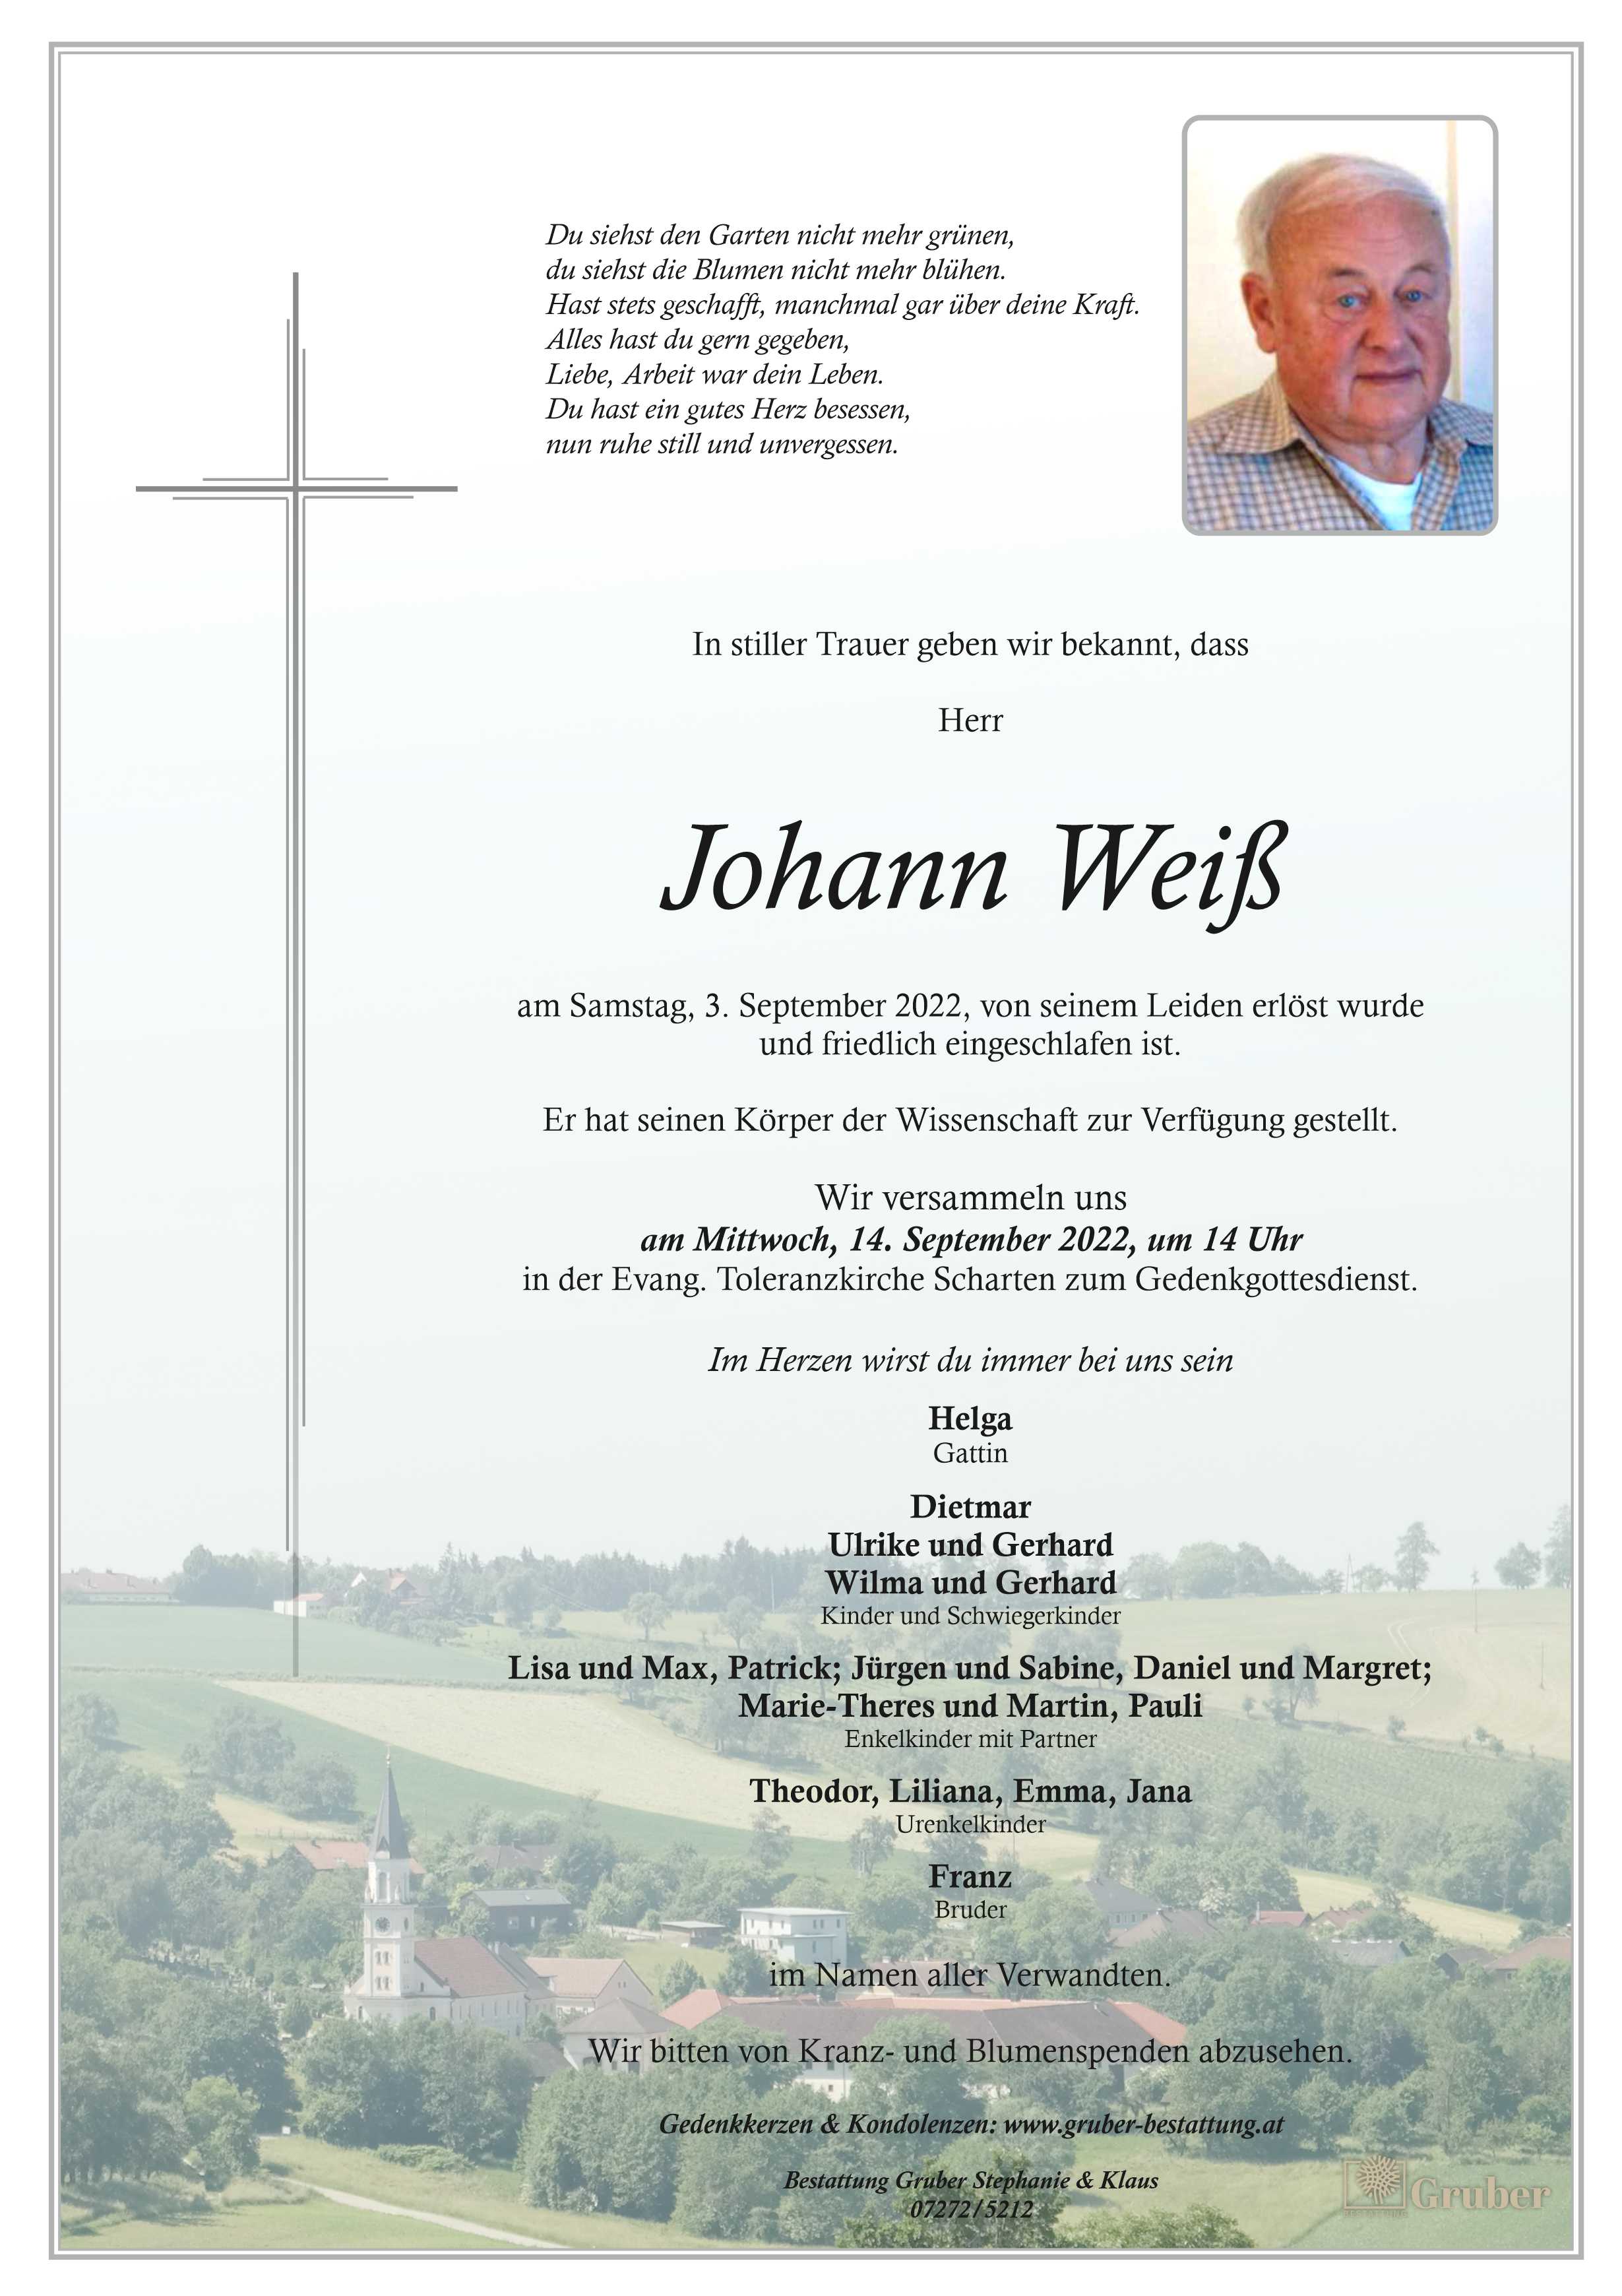 Johann Weiß (Scharten Evang)